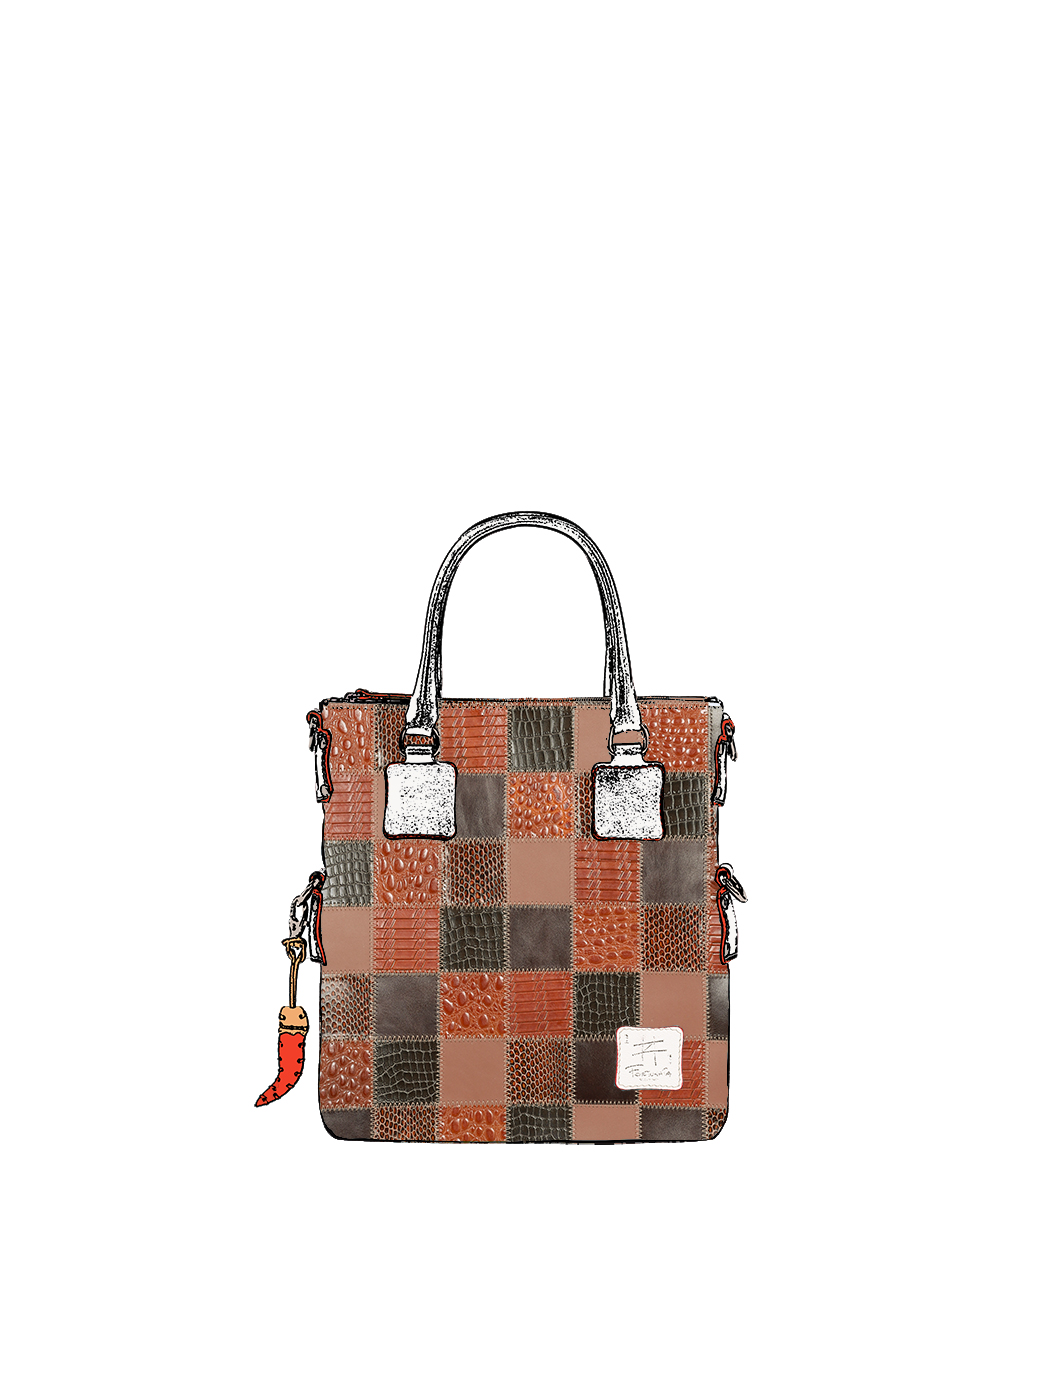 Дизайнерская мини - сумка из коллекции Fortunata в стиле пэчворк коричневого цвета